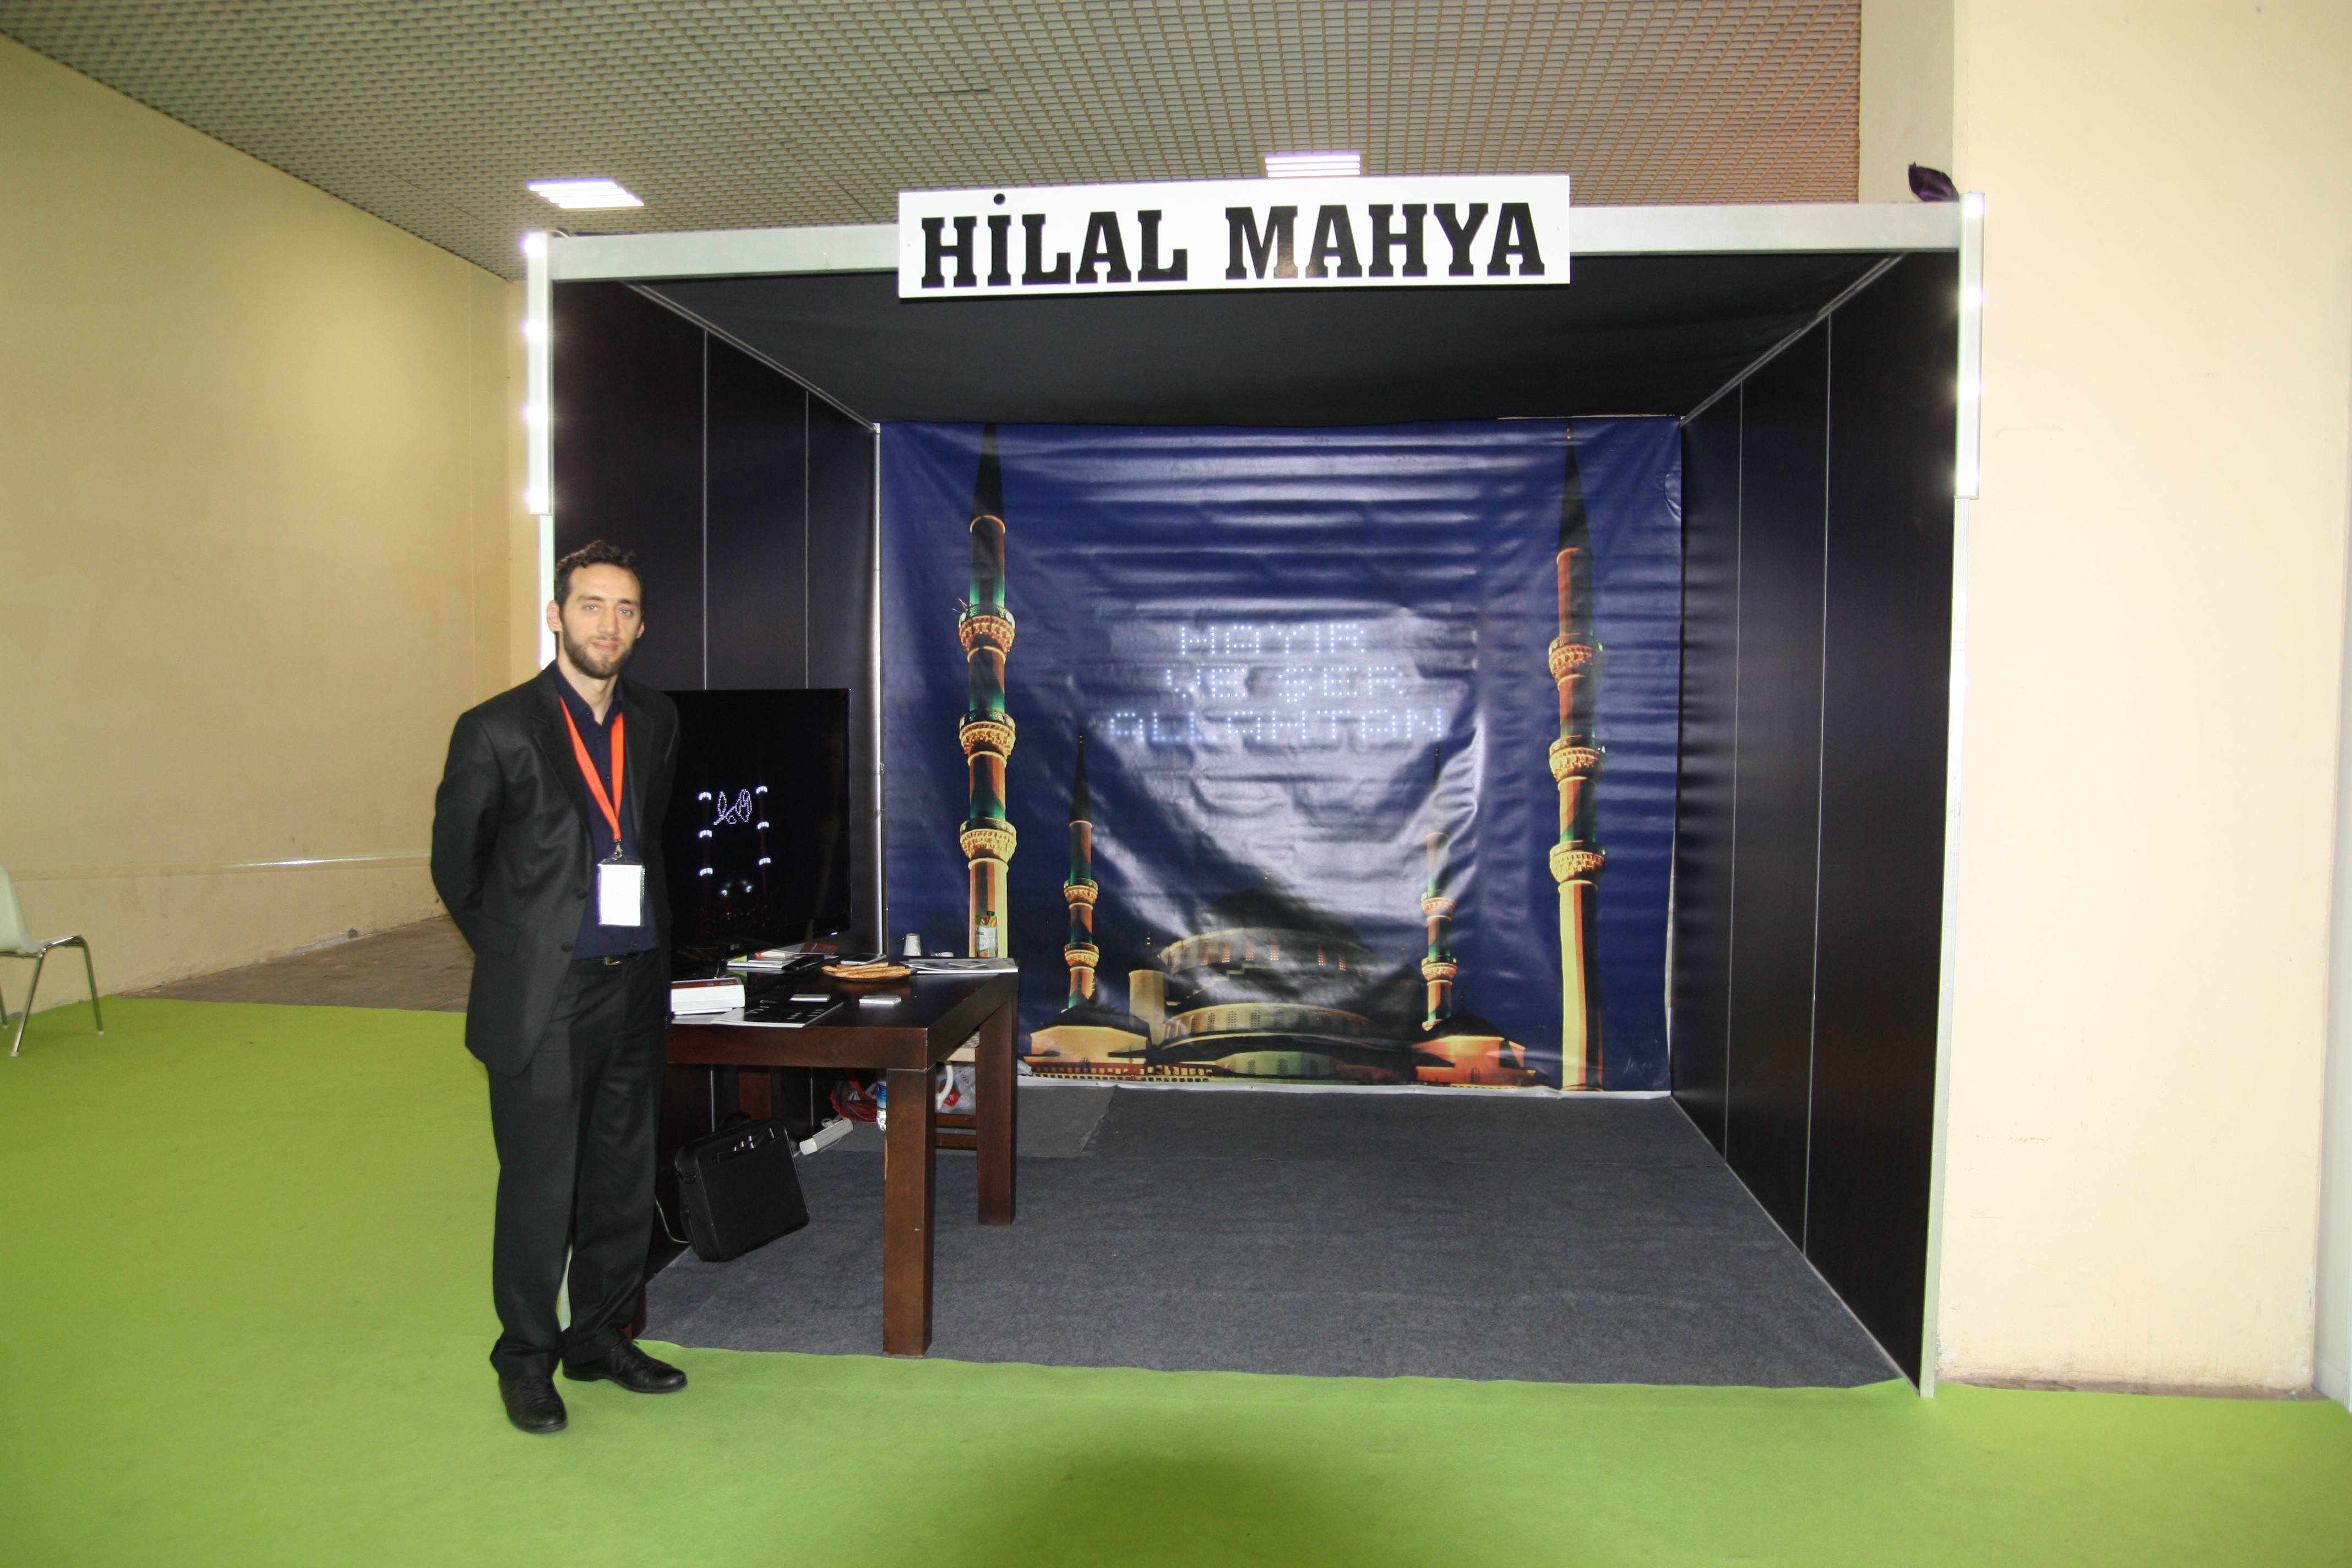 Hilal Mahya